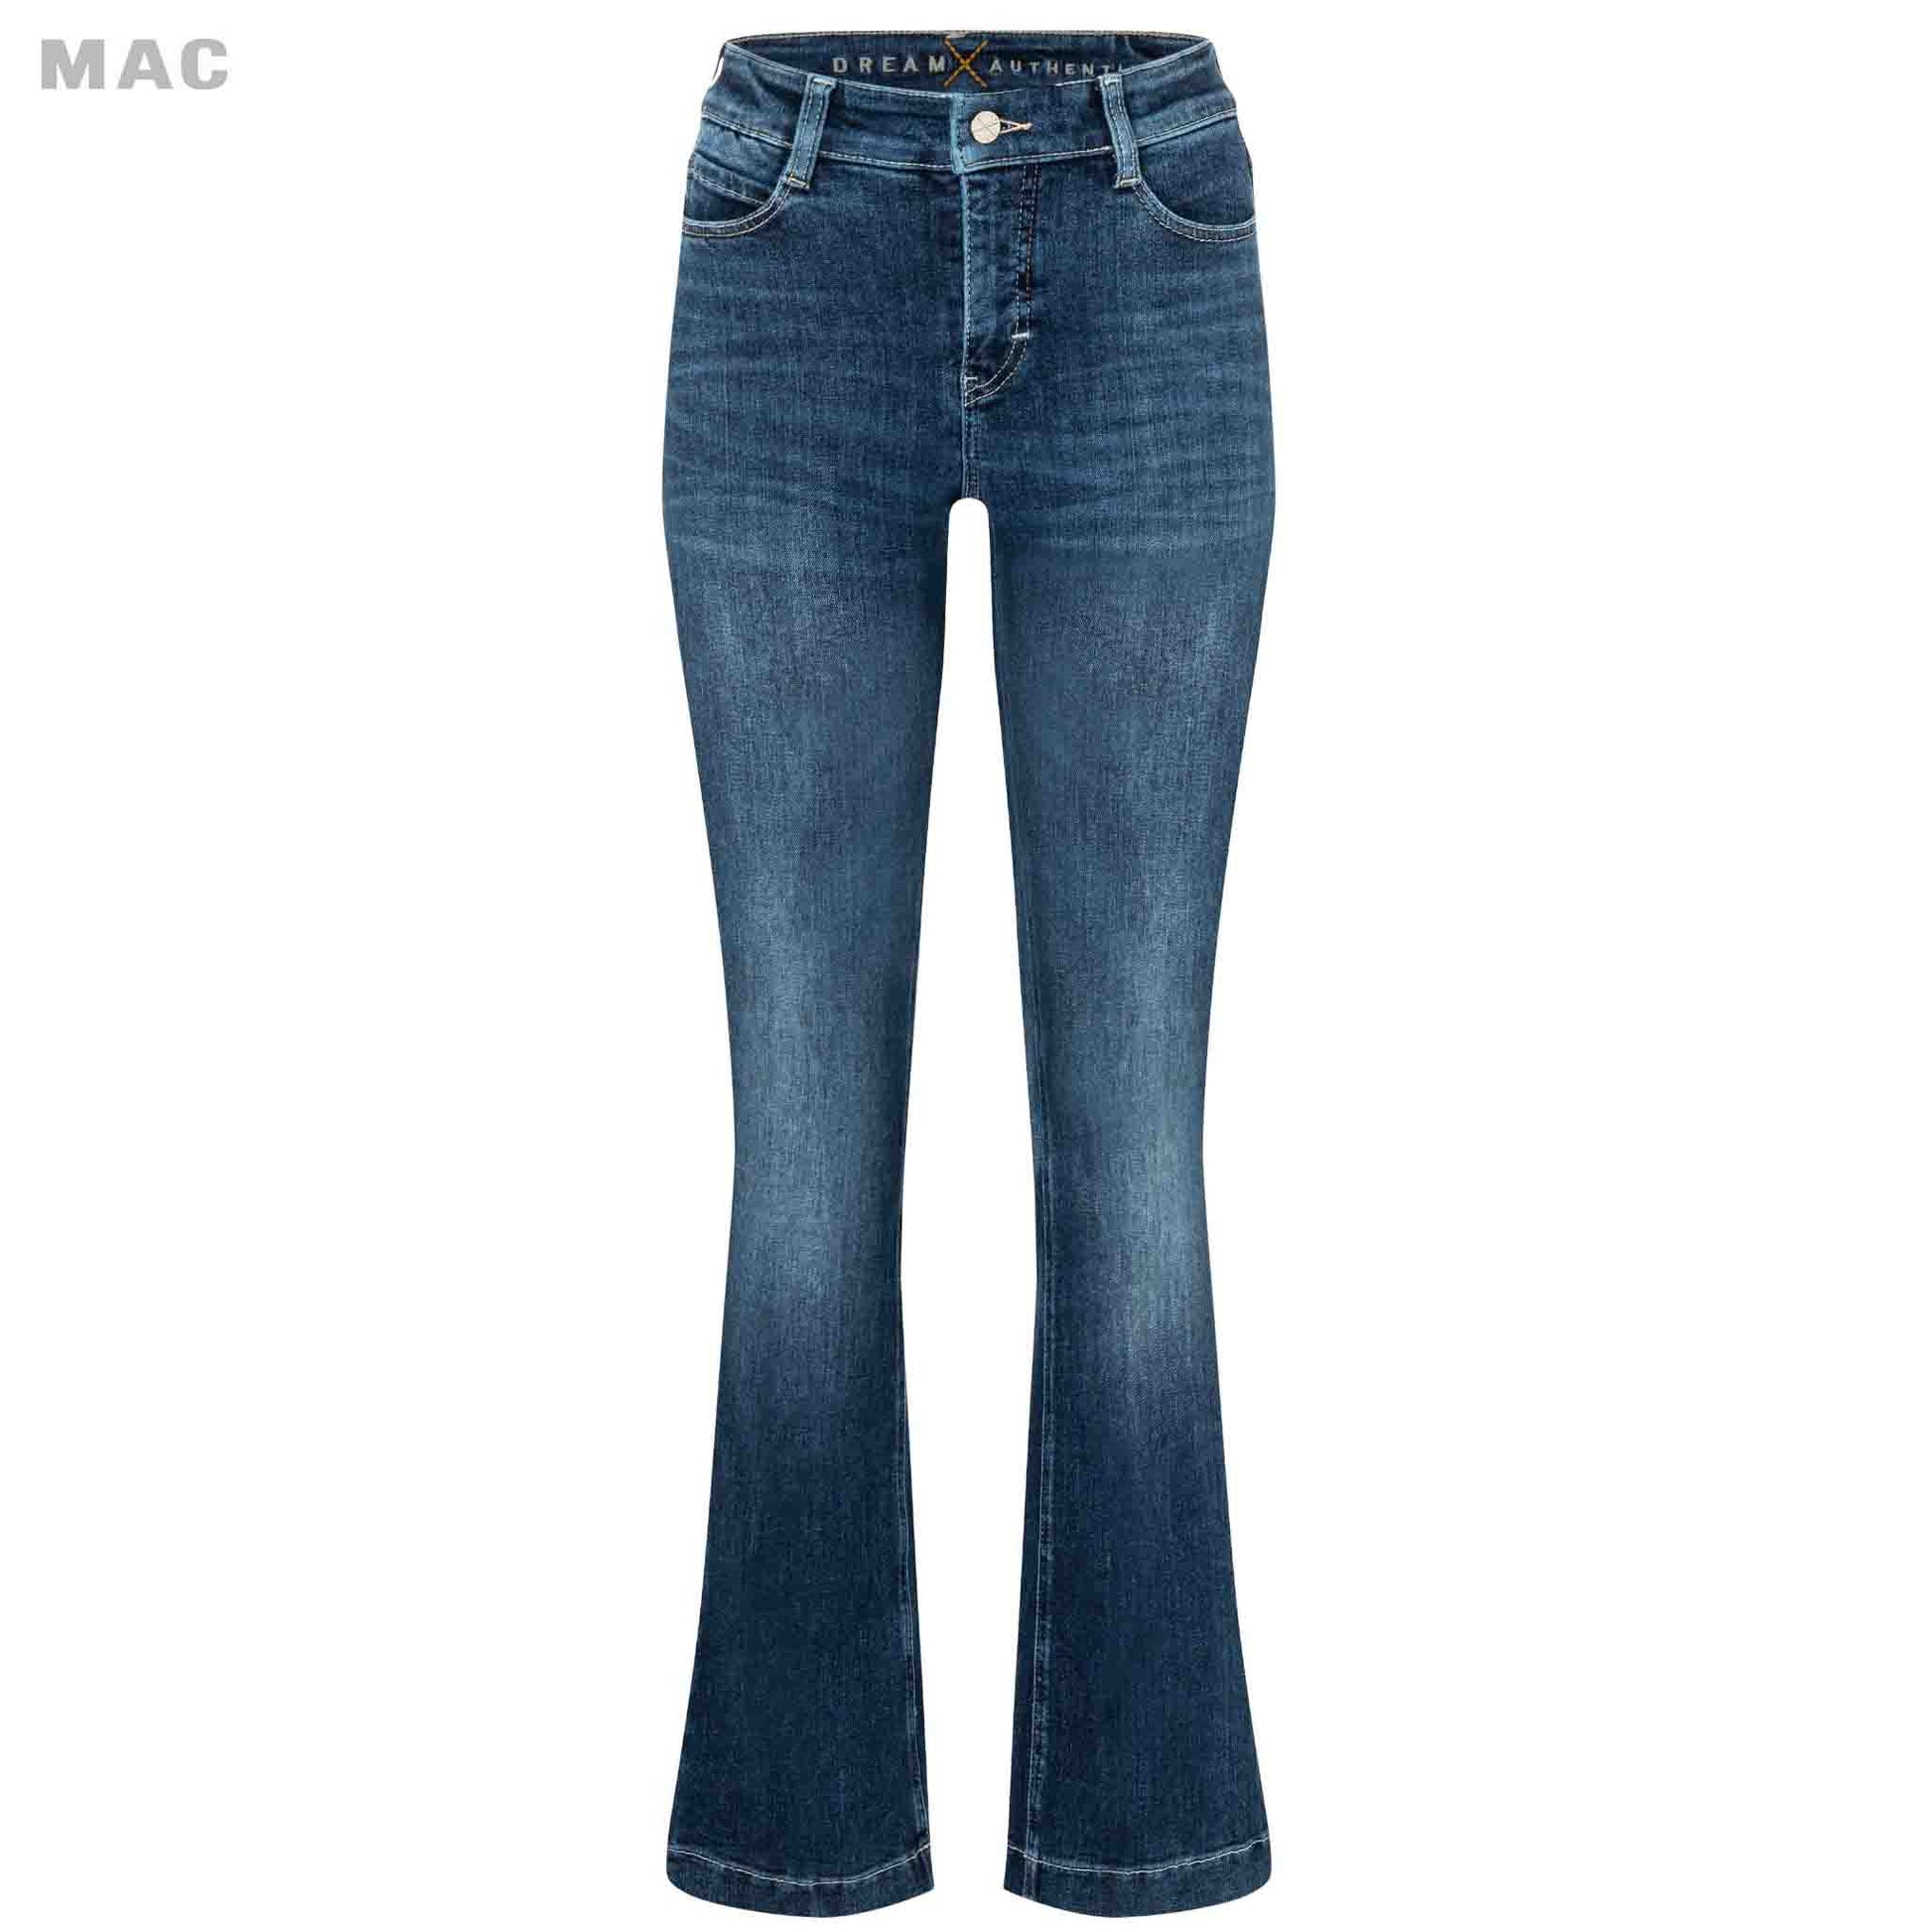 Mac Jeans Dream Boot Auth Deep Sea Blue lange vrouwen lengte 36